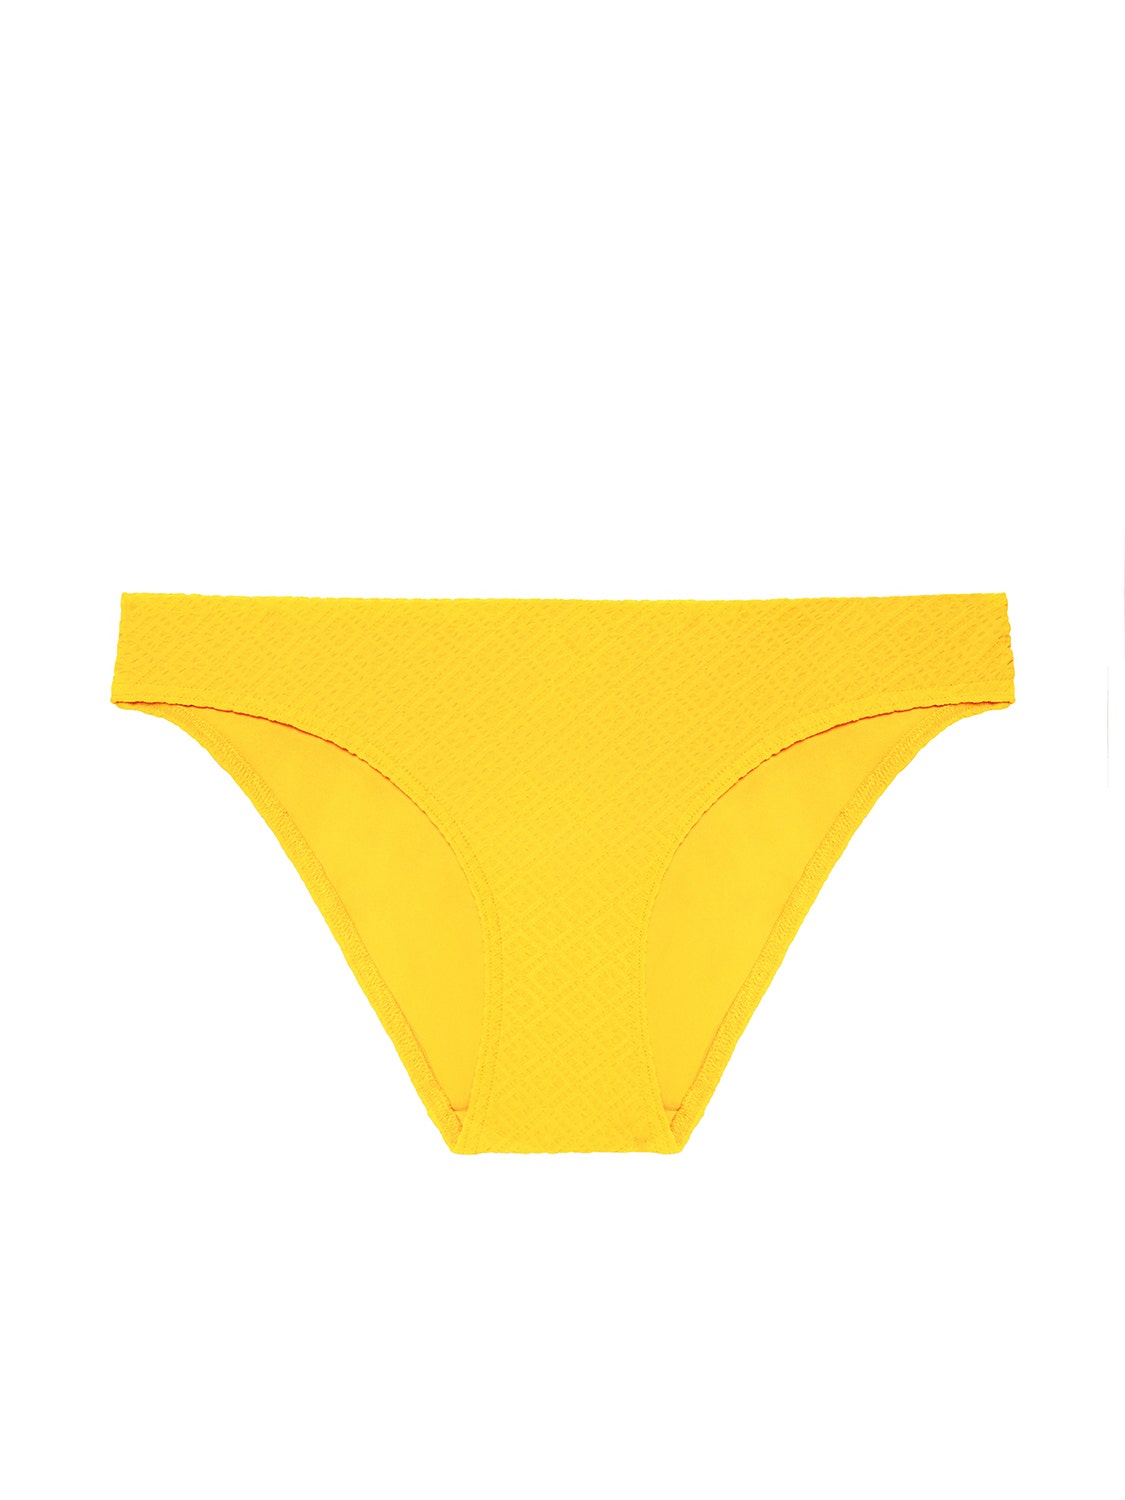 bikini-brief-mimosa-yellow-dune-40